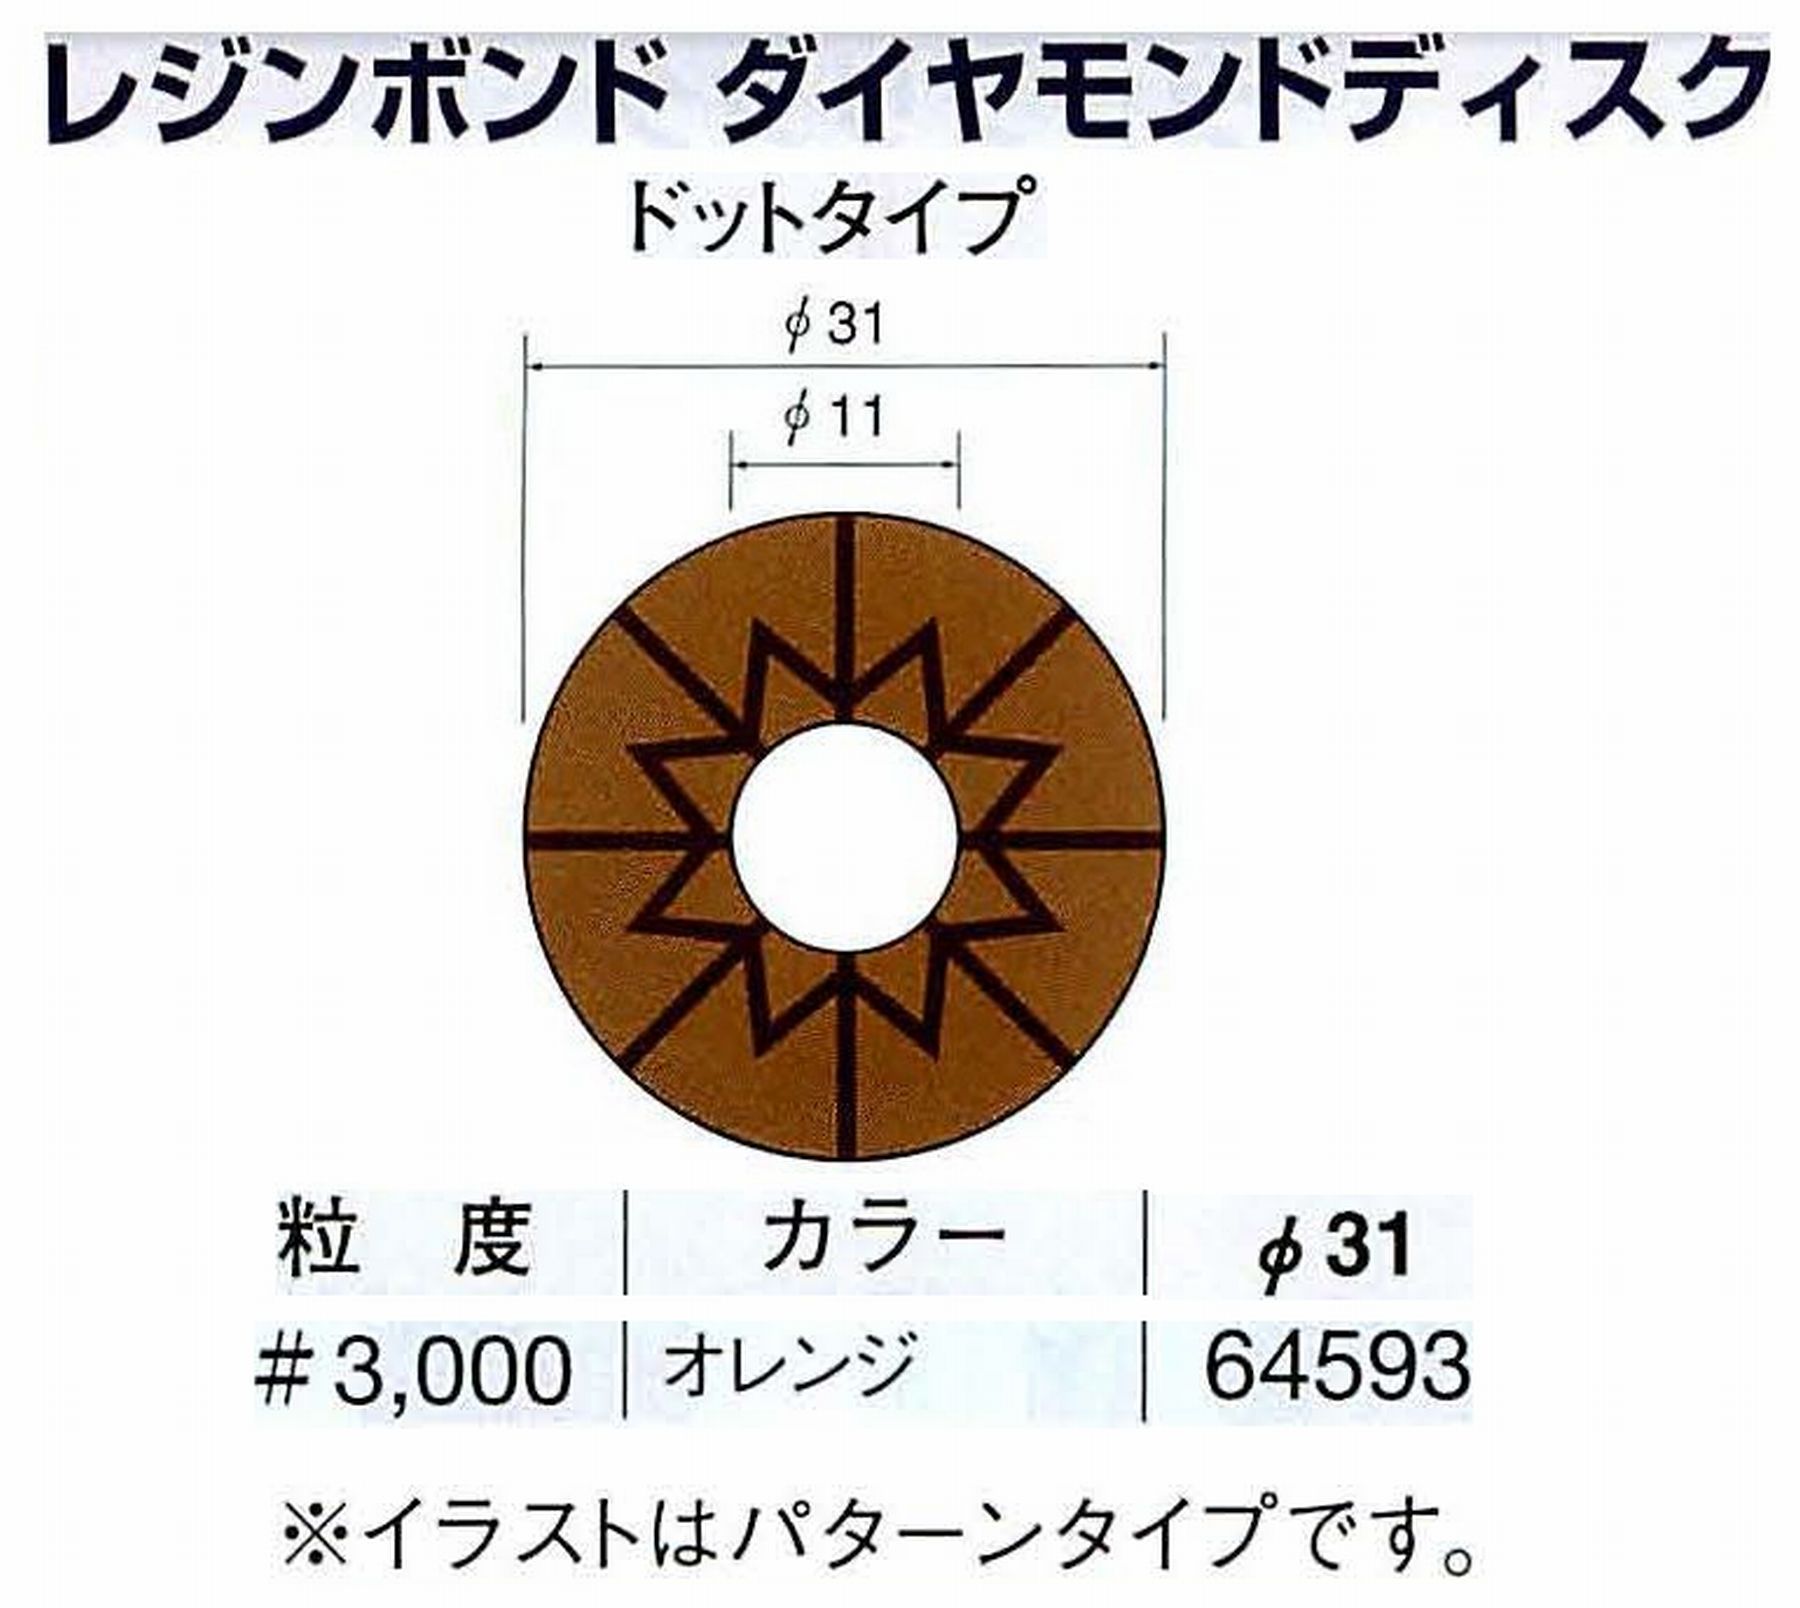 ナカニシ/NAKANISHI アングルグラインダ(電動・エアー) アングルアタッチメント専用工具 レジンボンド ダイヤモンドディスク(ドットタイプ) 64593